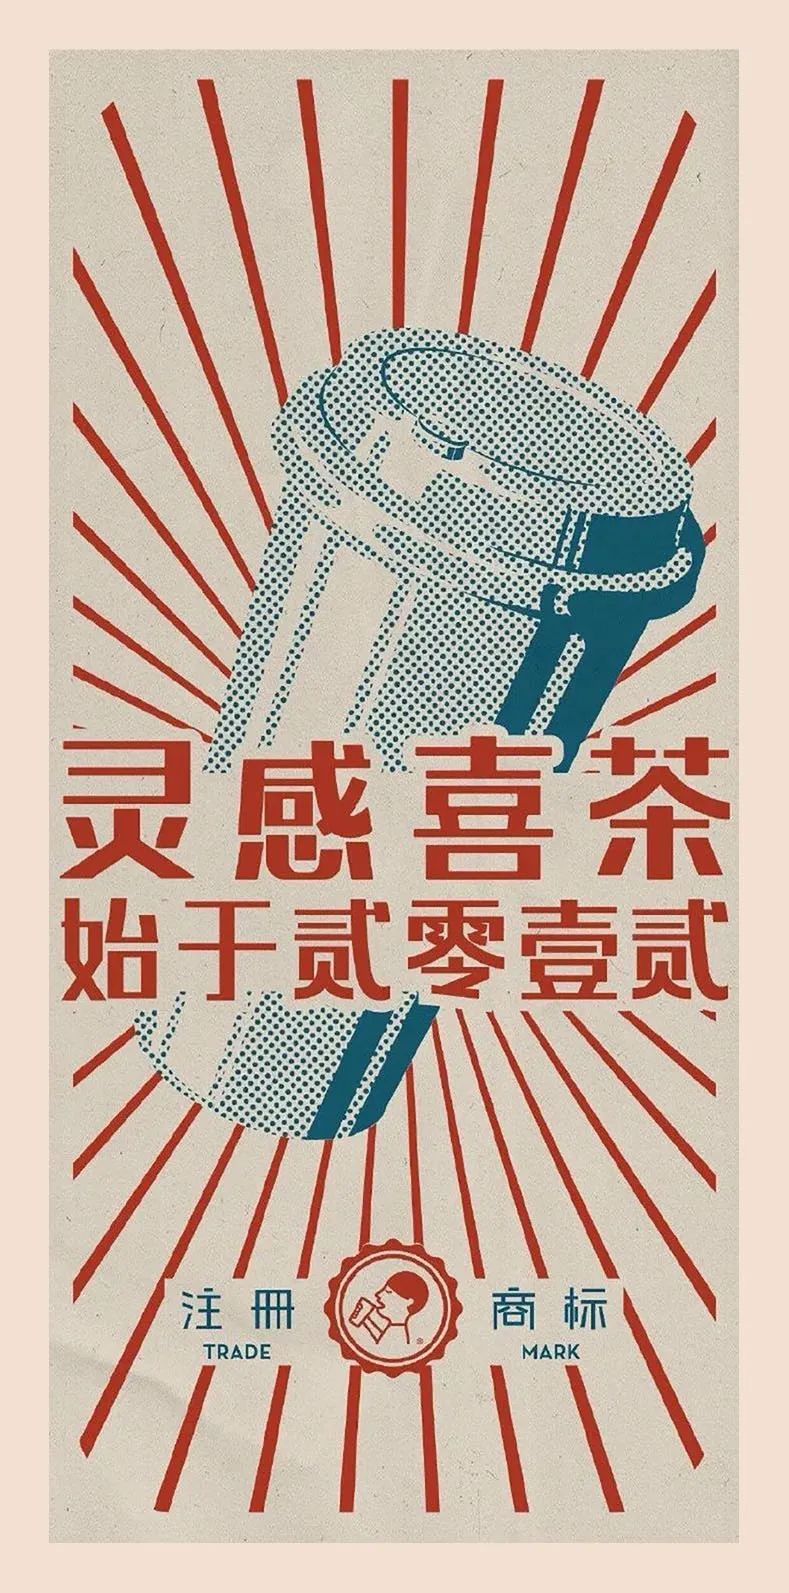 喜茶banner图片